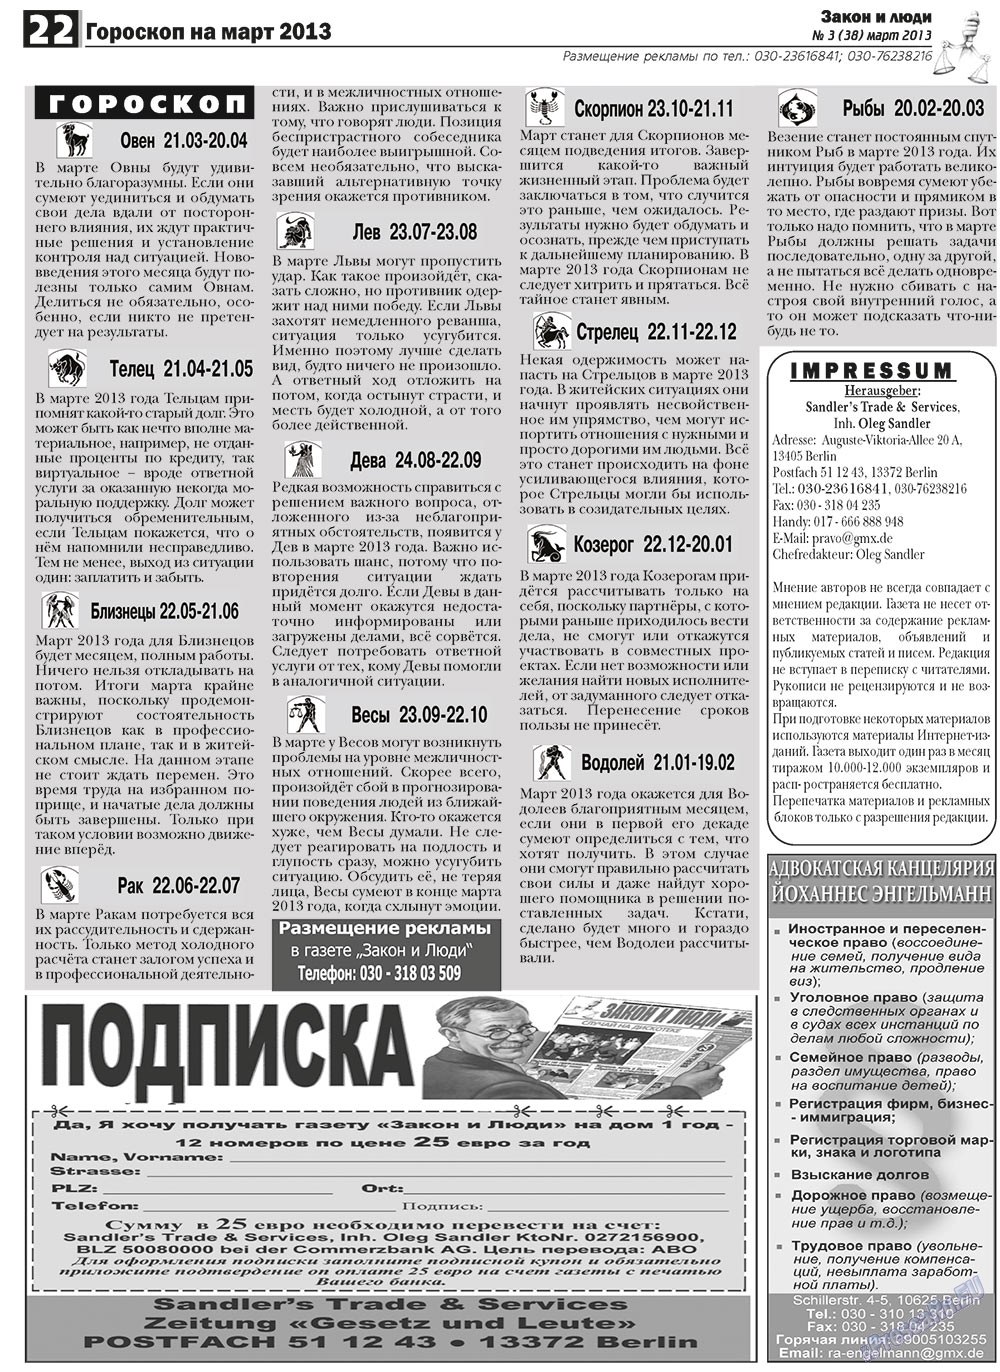 Закон и люди, газета. 2013 №3 стр.22